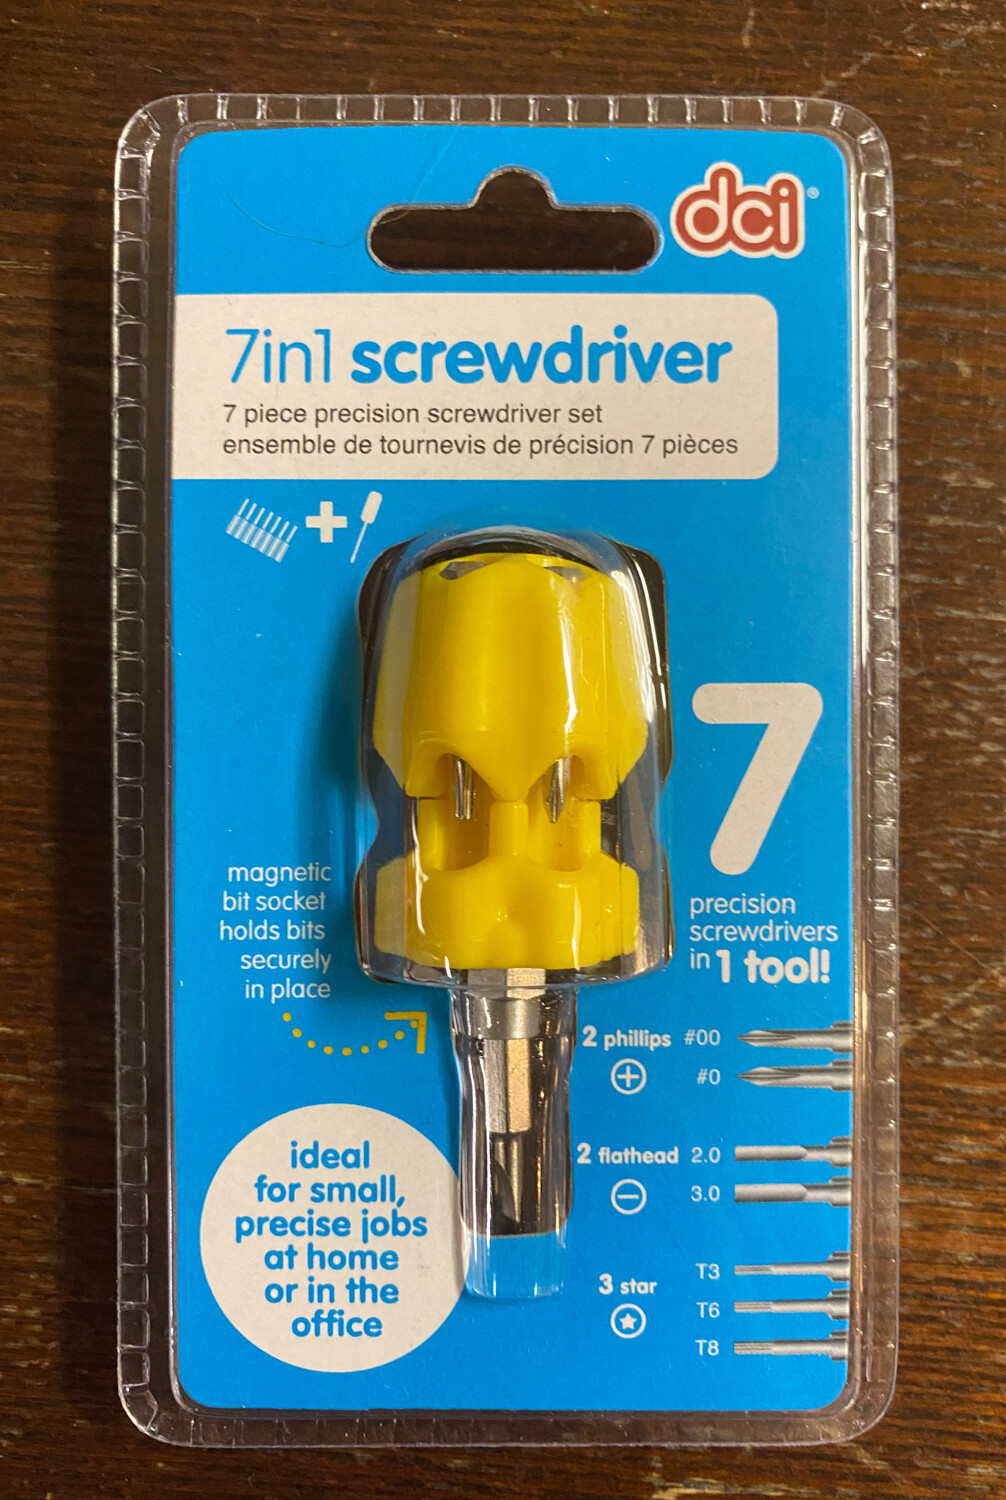 7in1 Screwdriver - dci